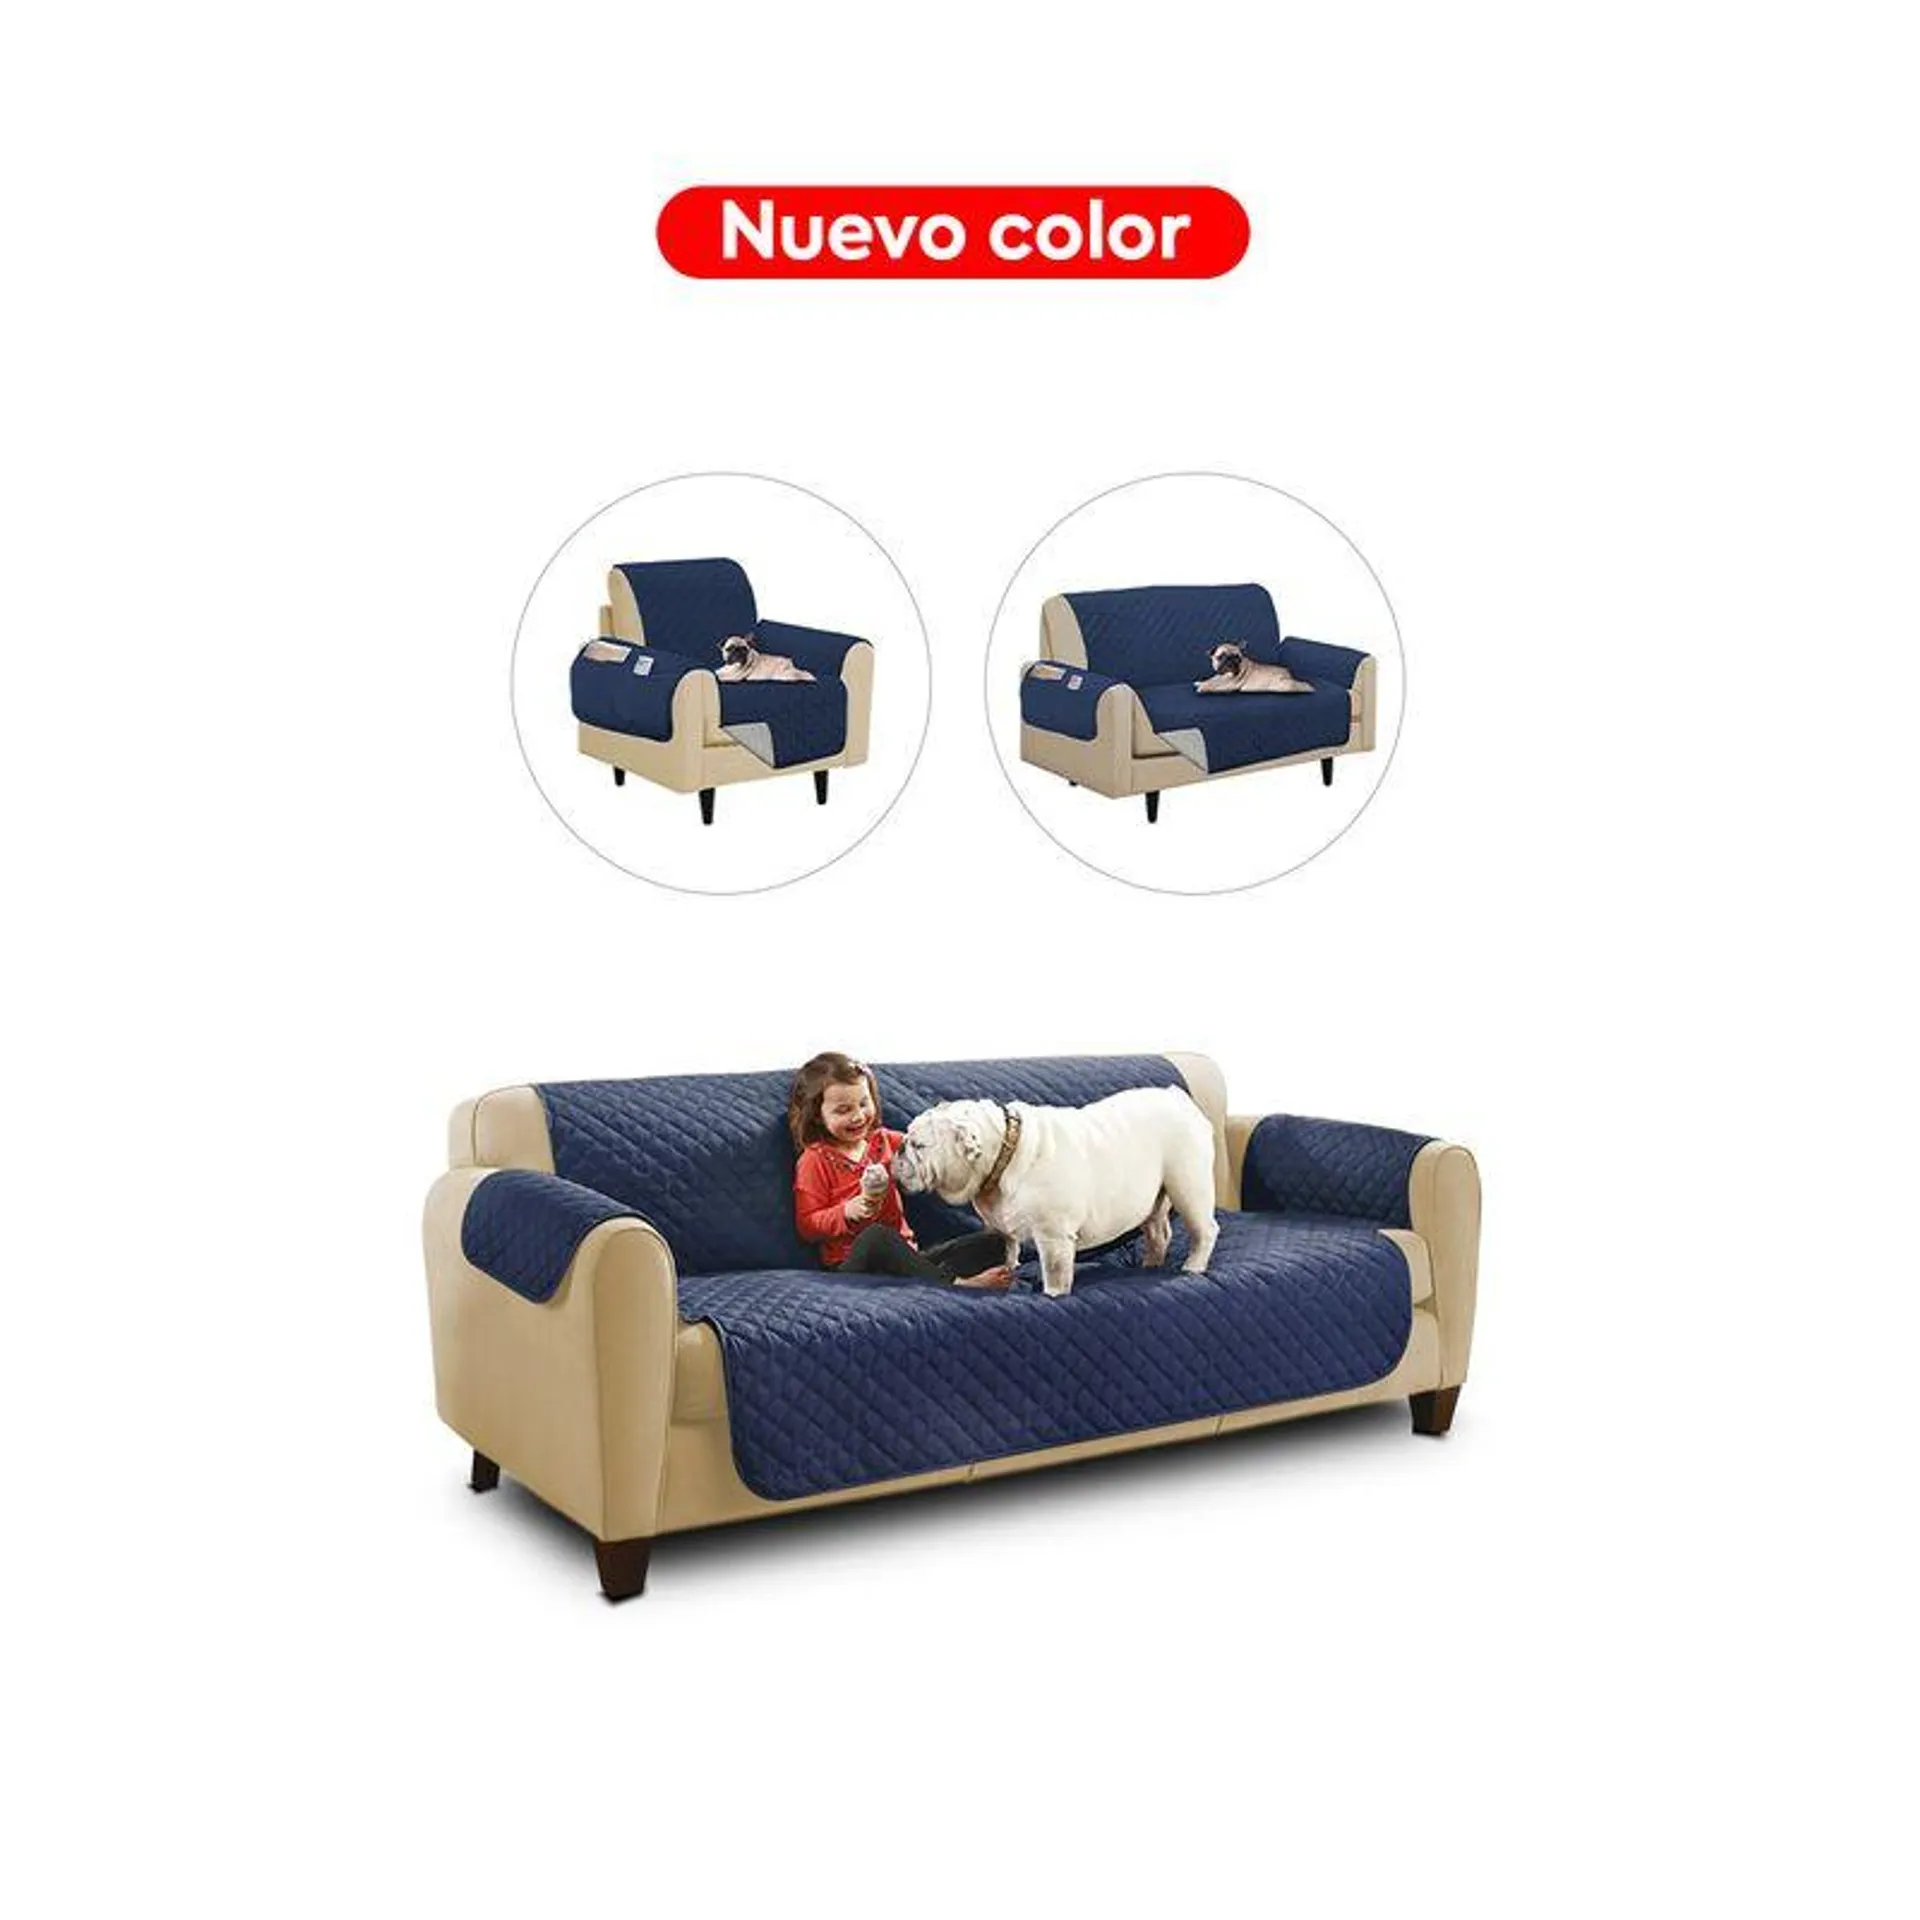 Couch Cover - Combo de Cobertores para Sofá de 1, 2 y 3 cuerpos